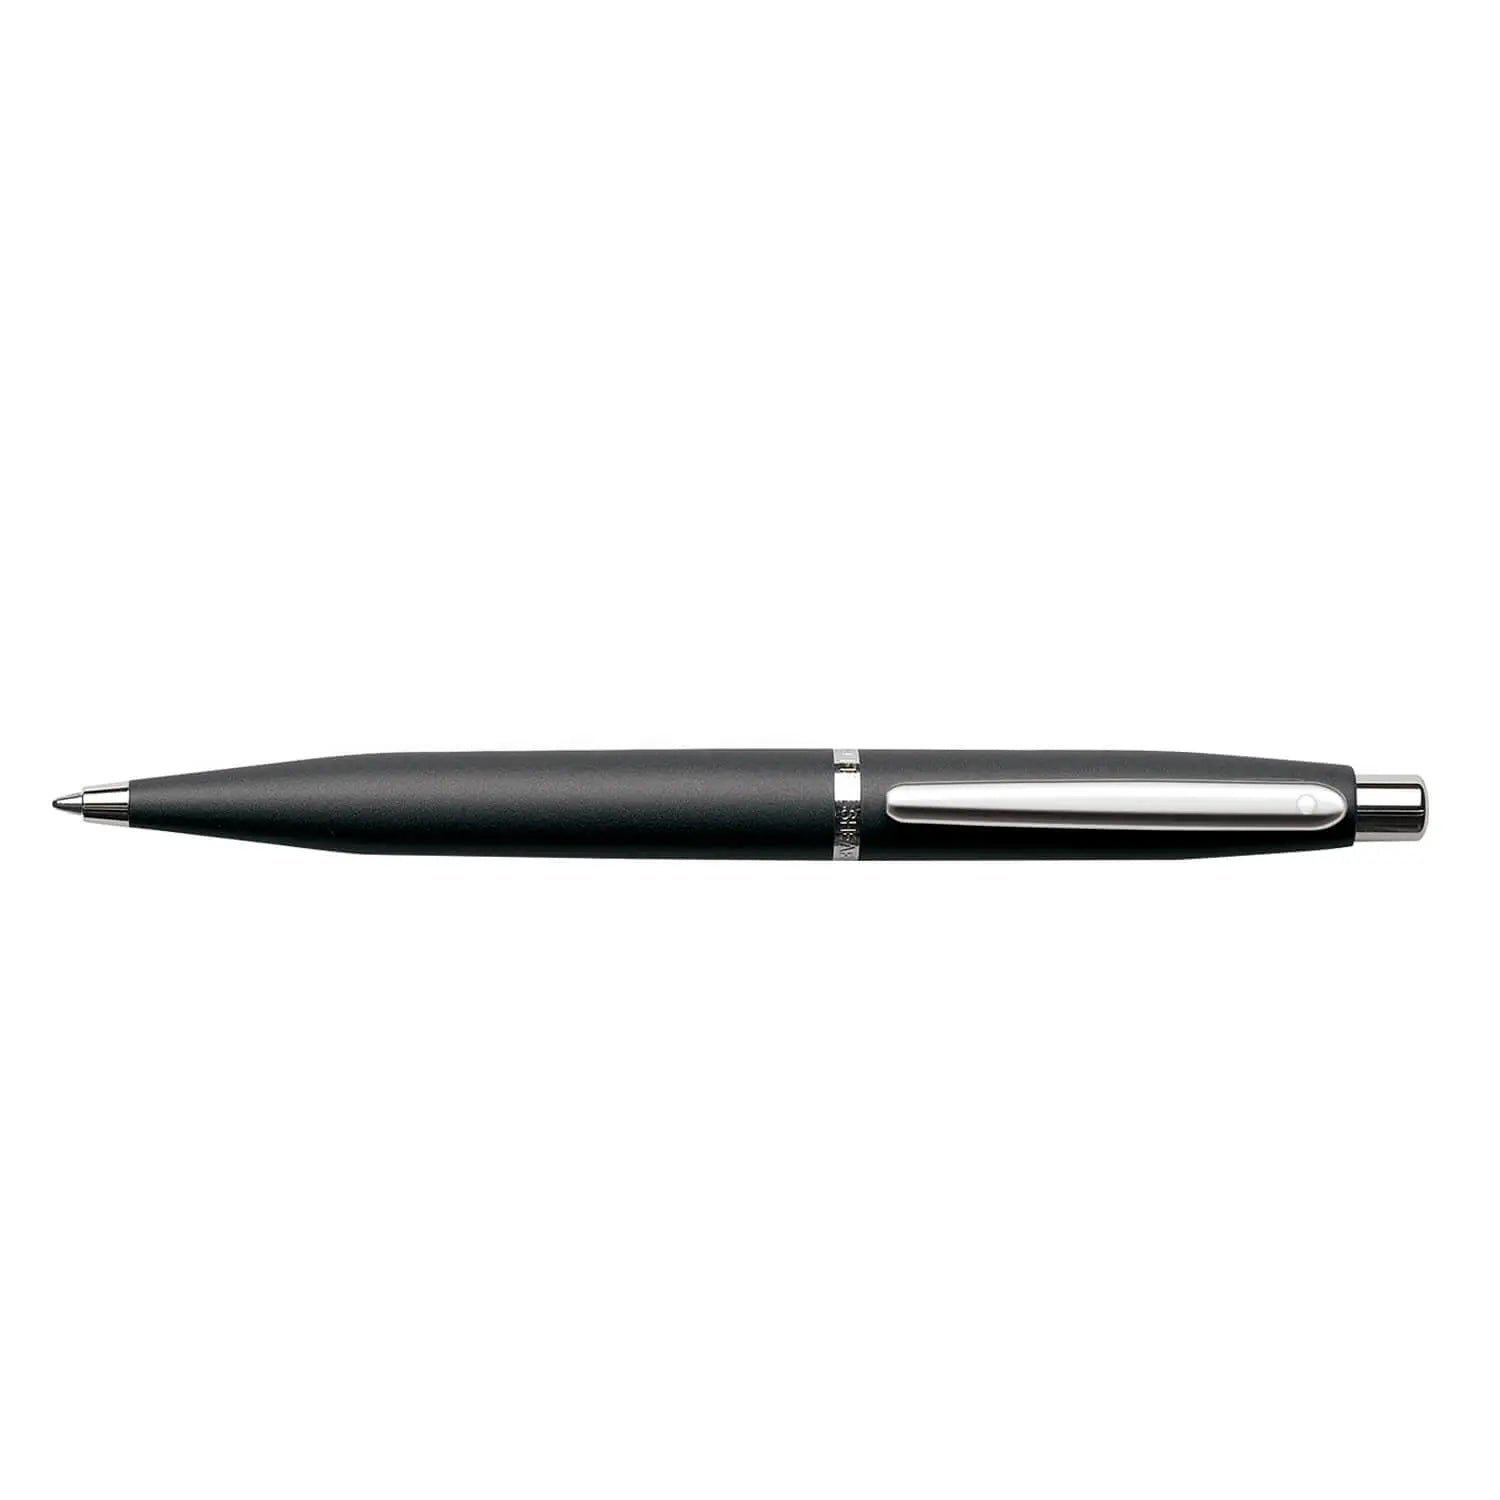 Sheaffer® Giftset VFM 9405 Black Ballpoint Pen and Medium Notebook Black Hangsell